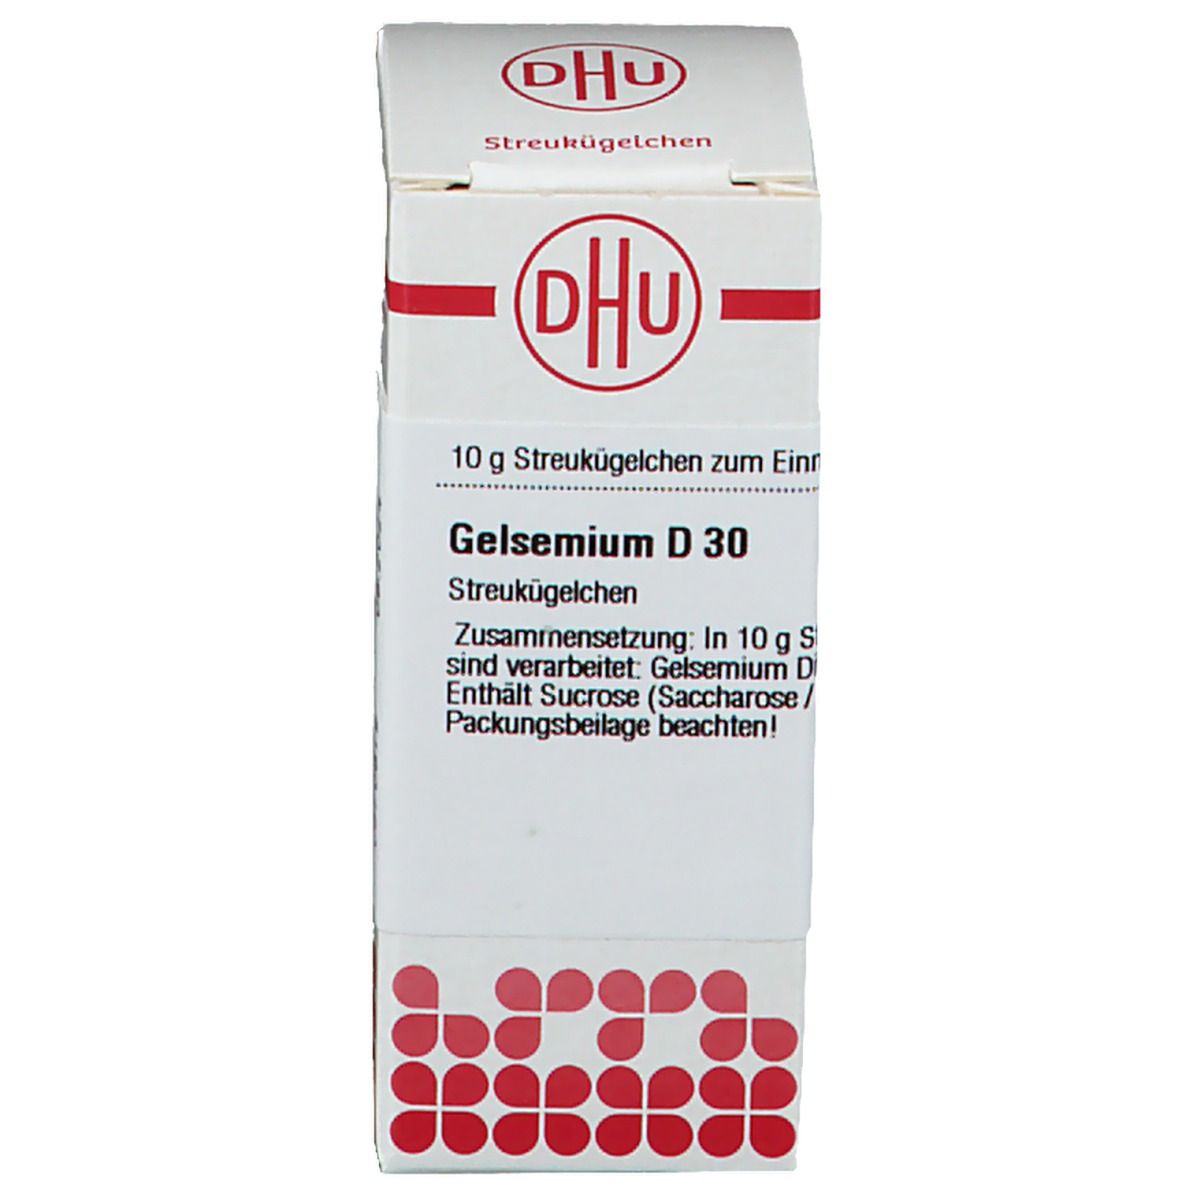 DHU Gelsemium D30